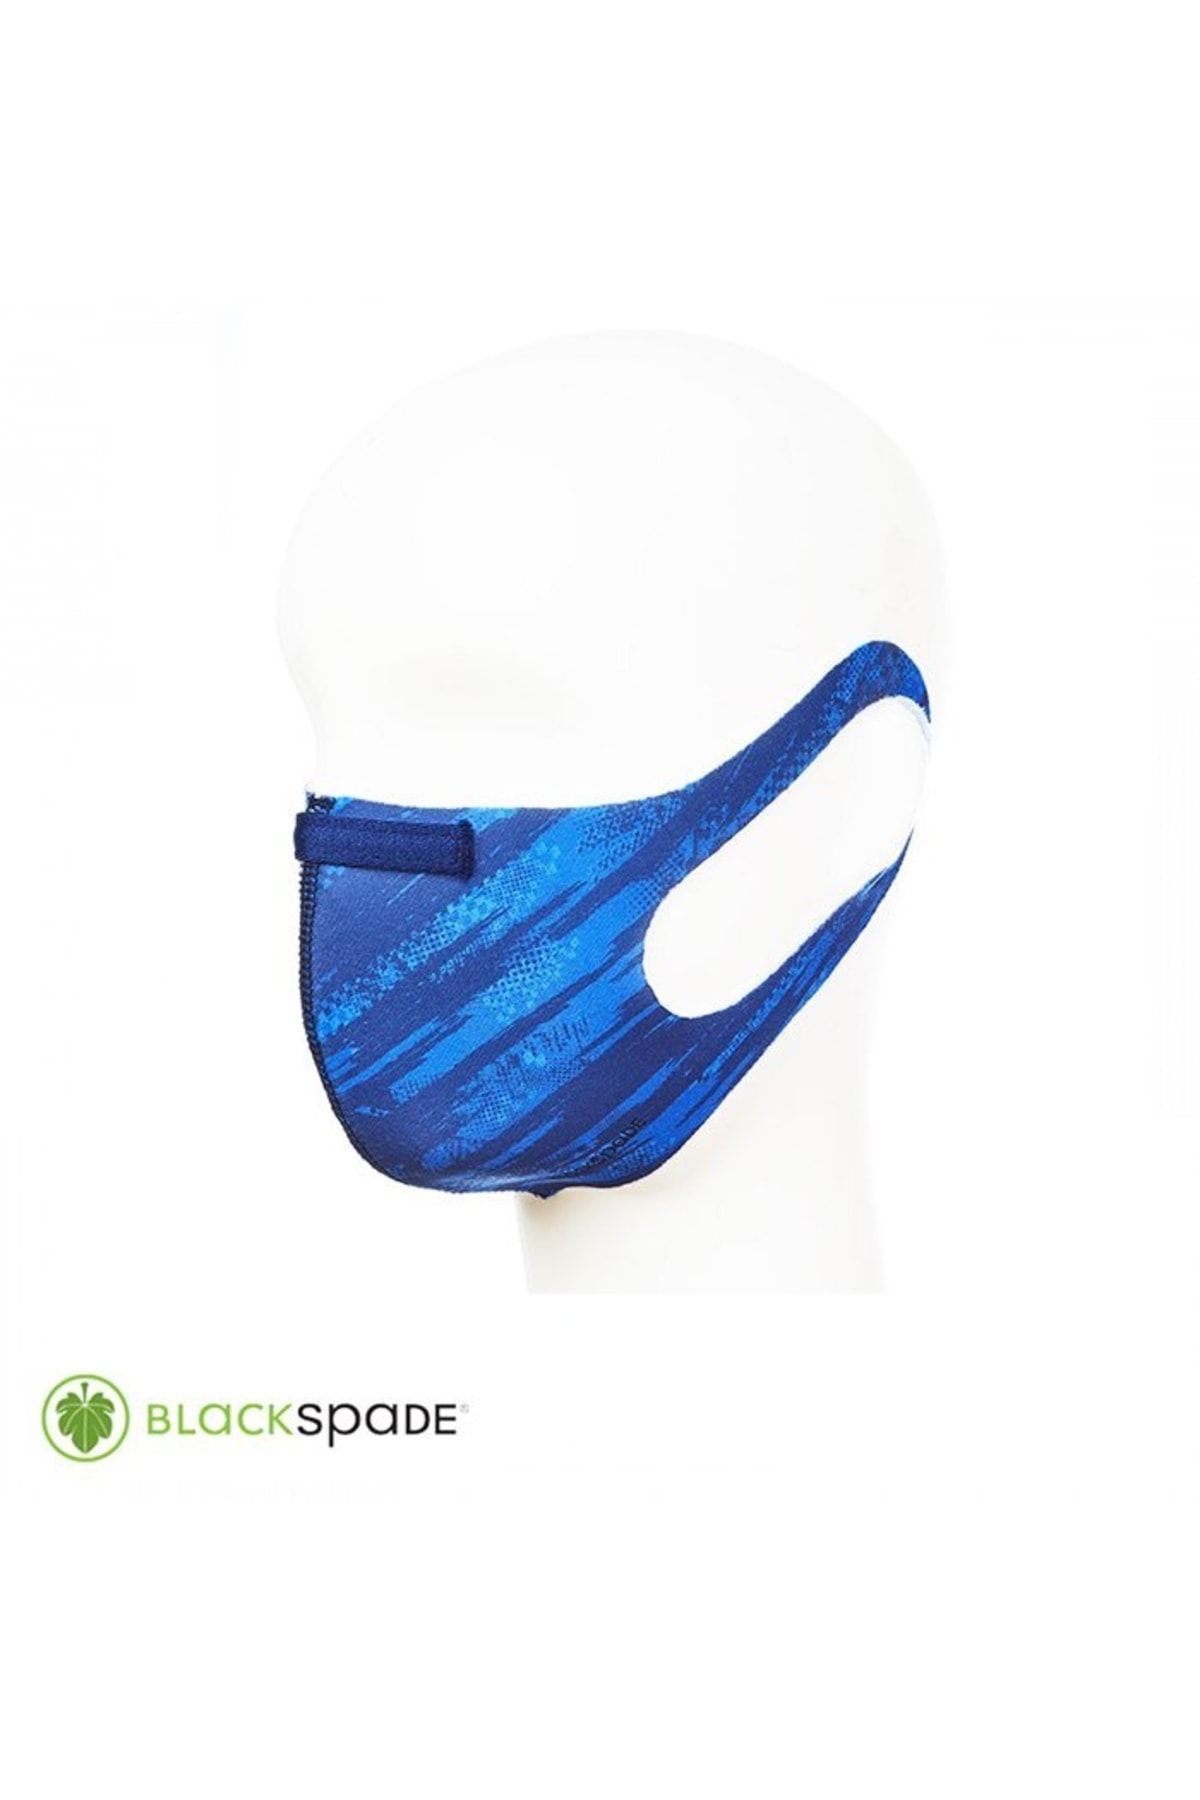 Blackspade Unisex Koruyucu Maske Yarış Desen L